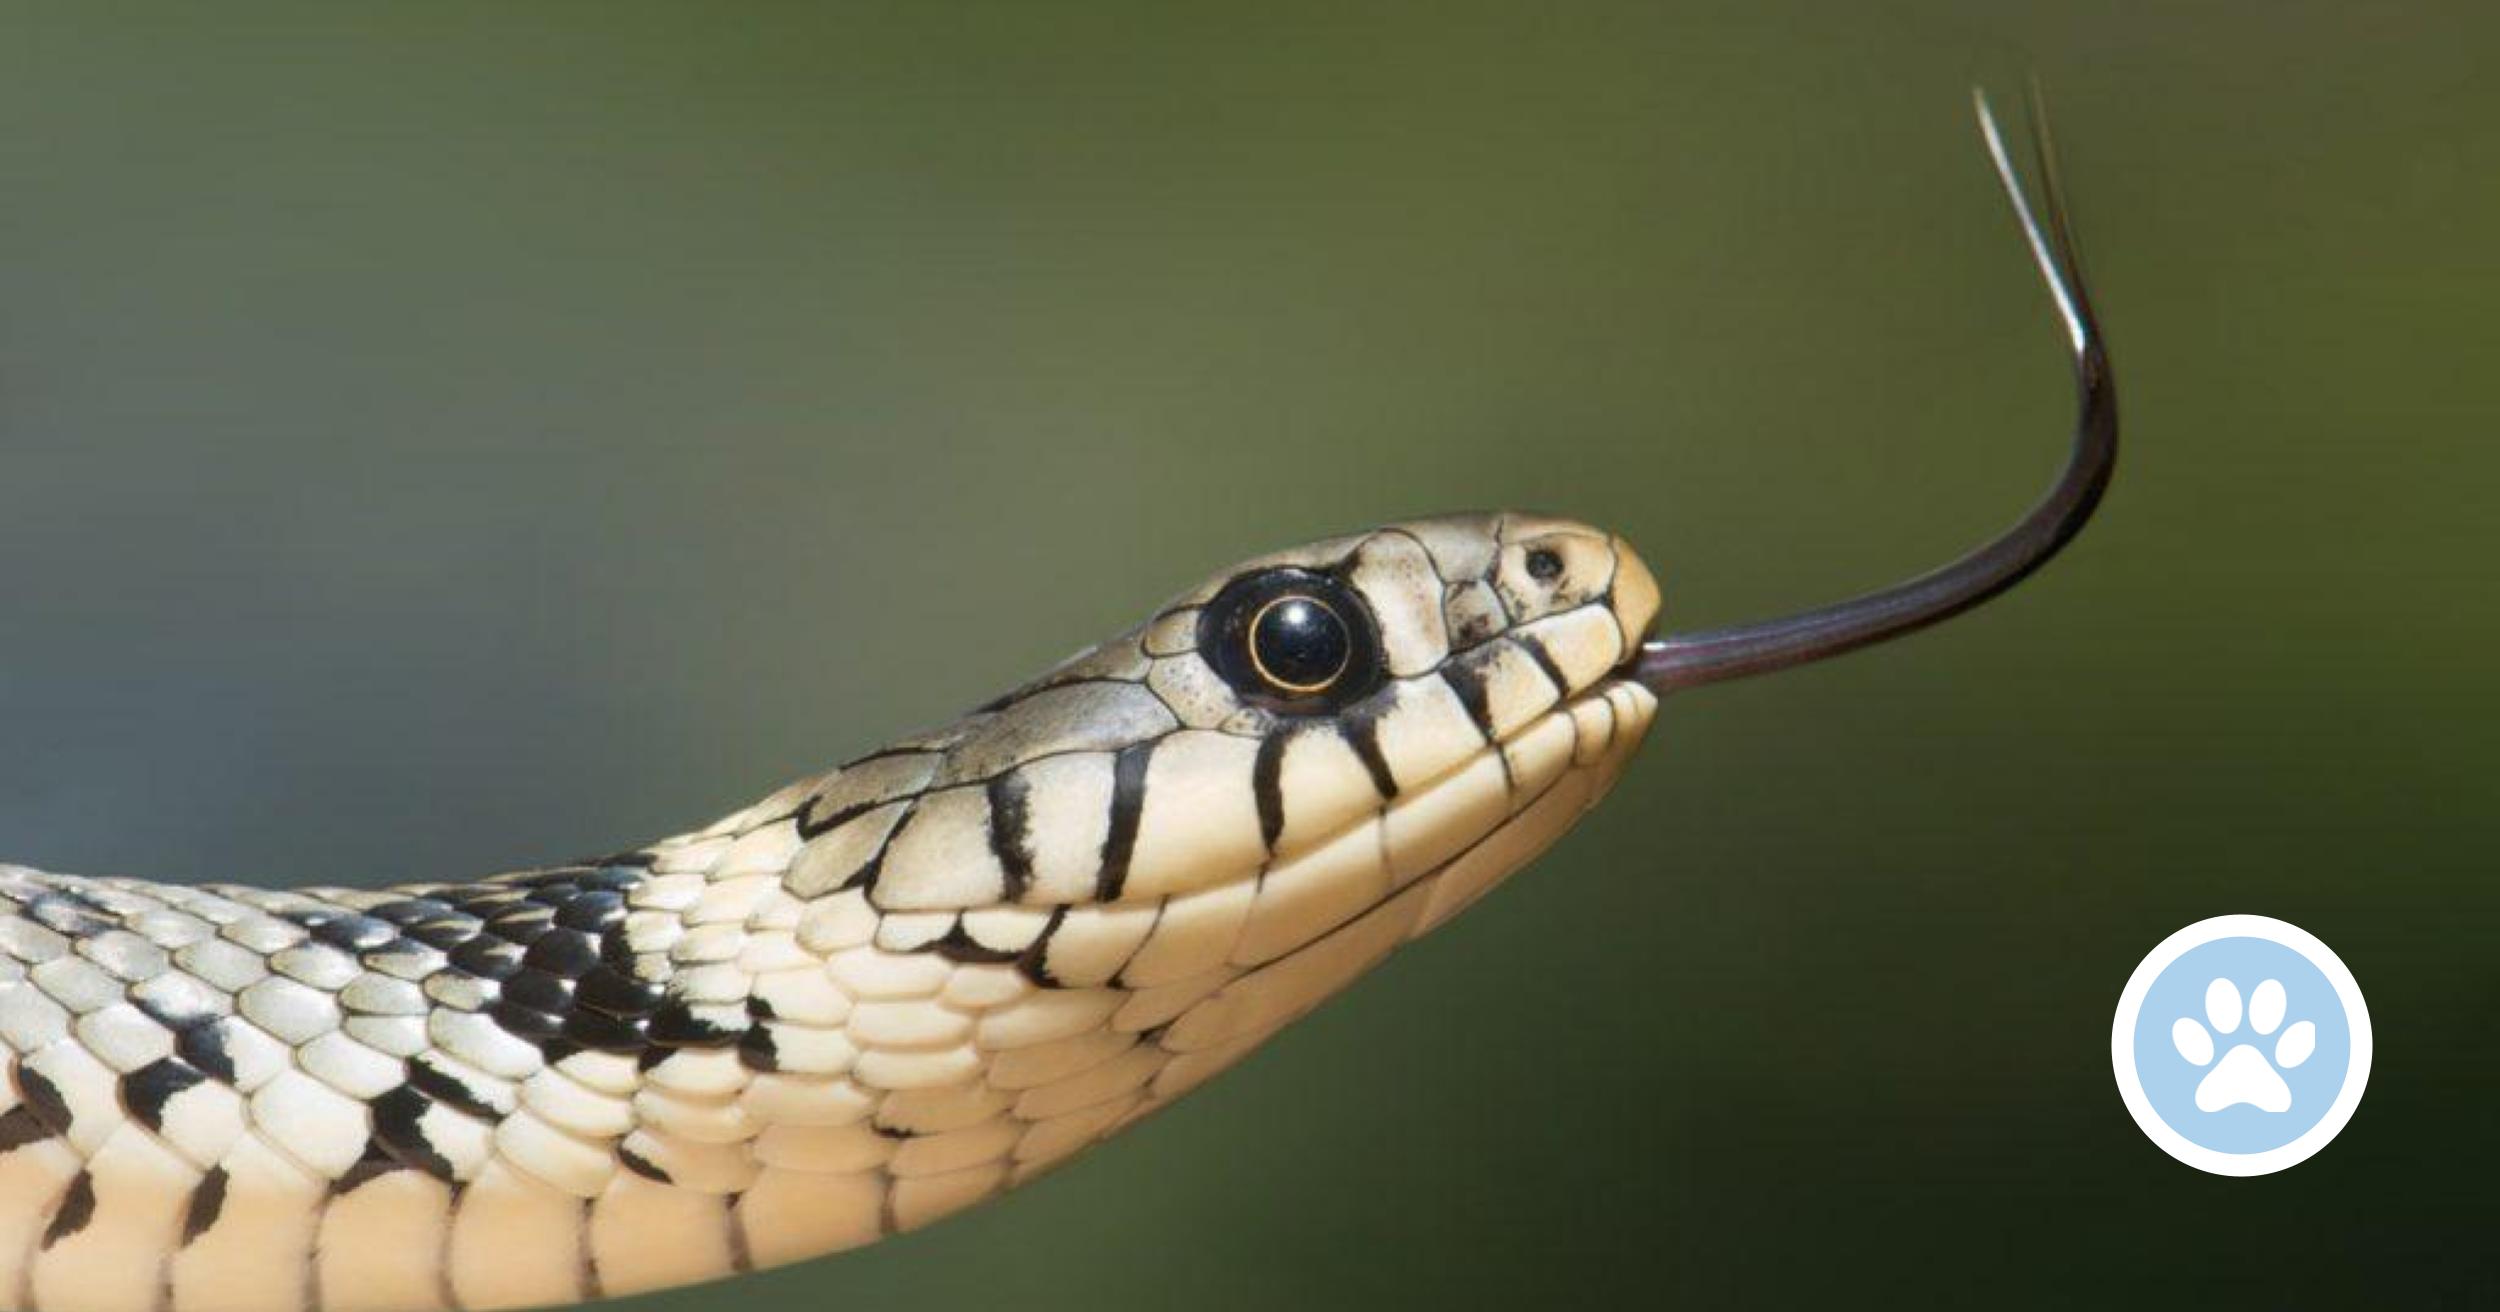 Hvorfor har nogle slanger giftige tænder